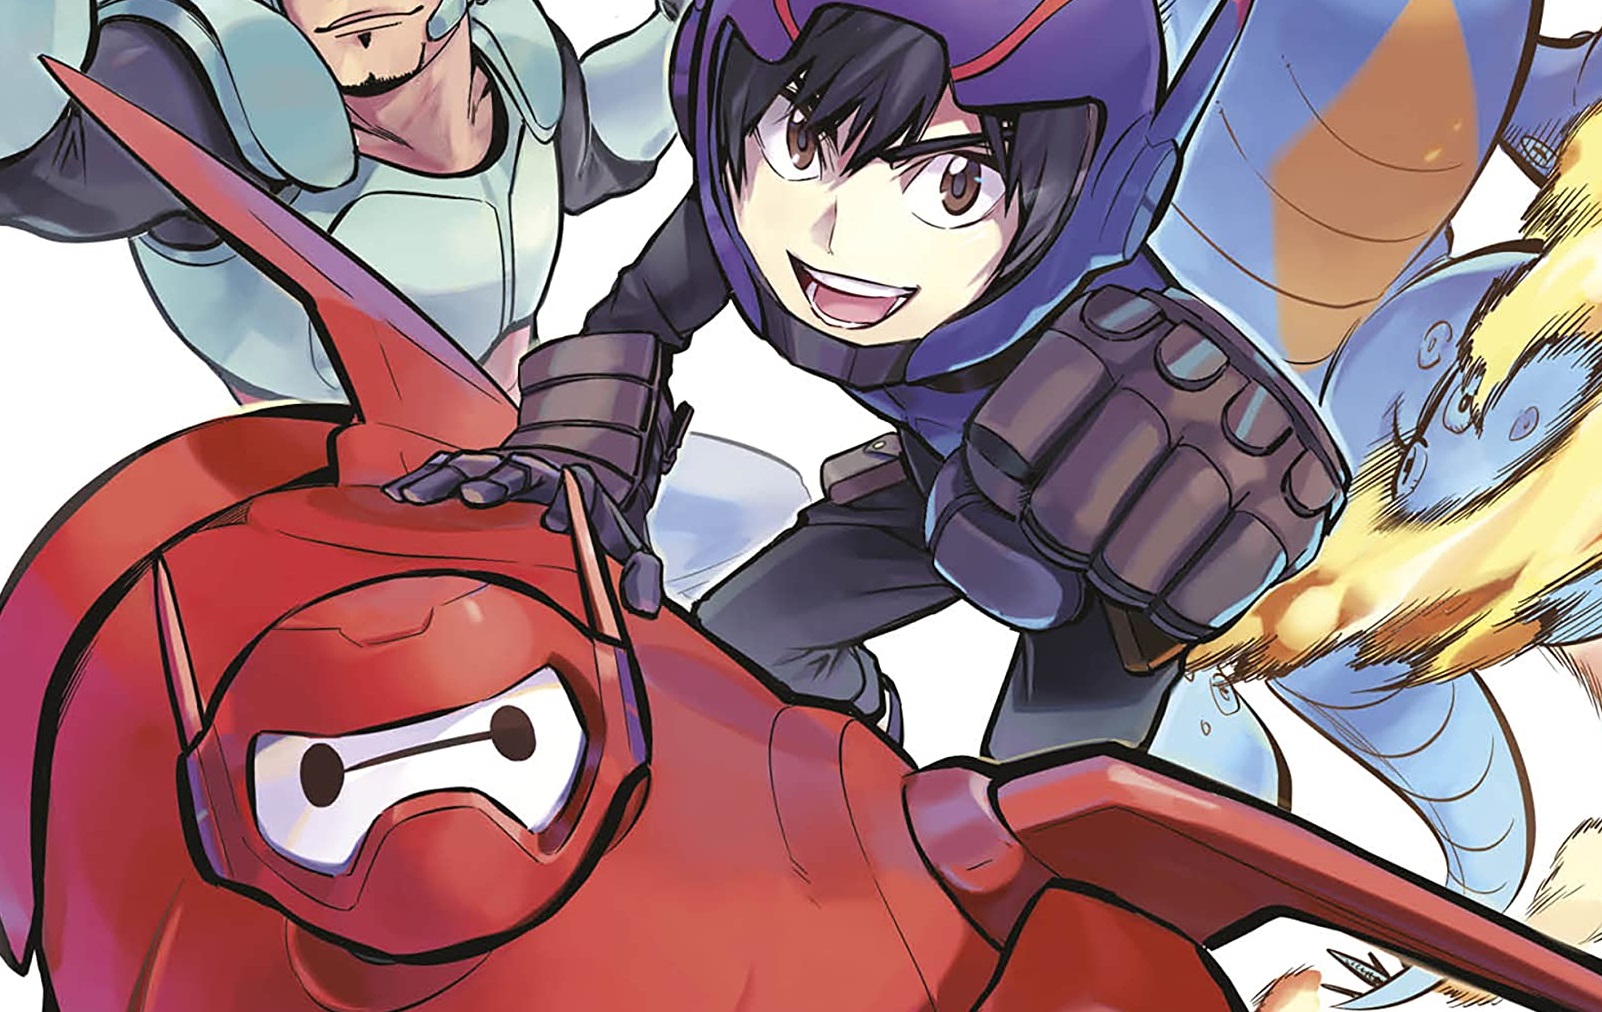 Recorte da capa do mangá Big Hero 6, lançamento da Editora Planeta. Baymax e Hiro usam suas armaduras e voam, junto com seus amigos, em direção ao leitor